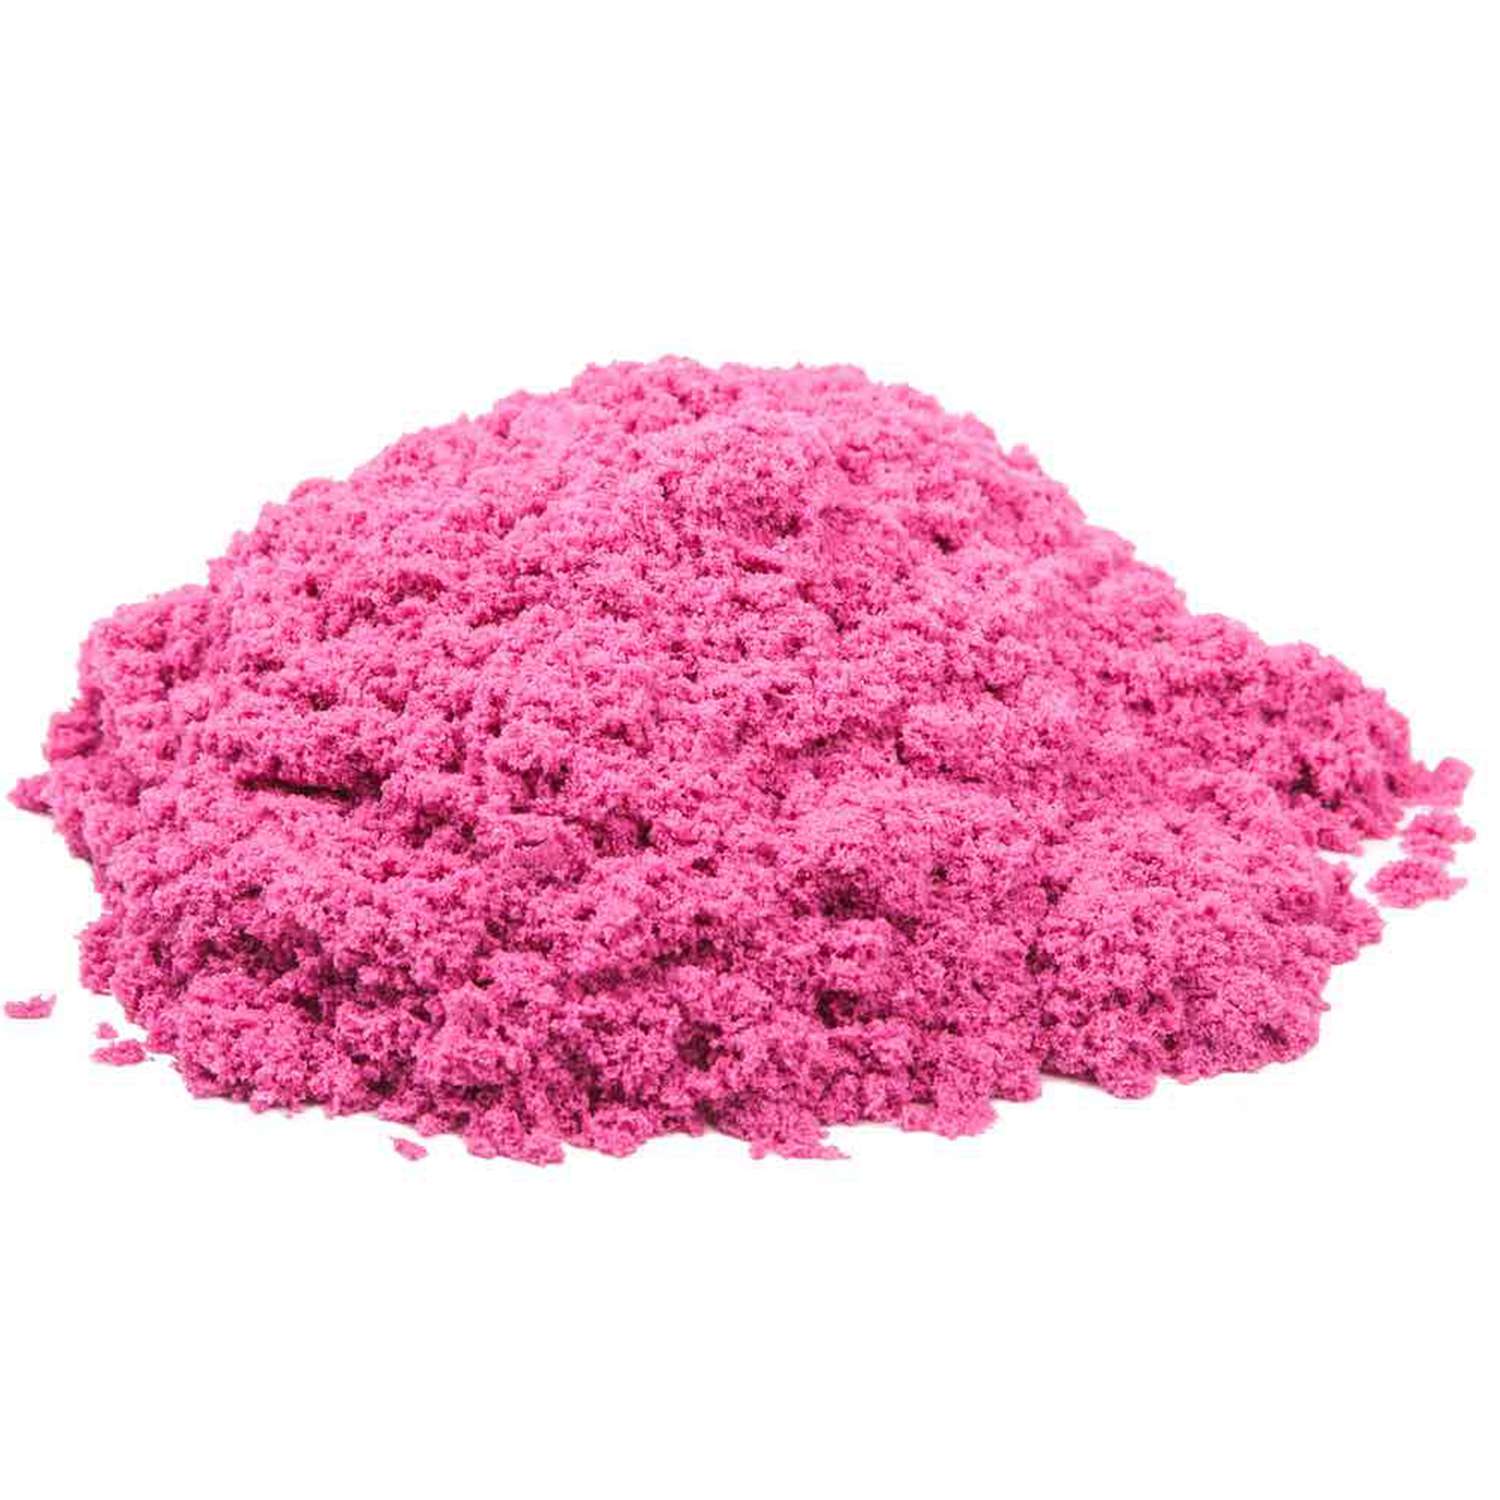 Песок Космический песок 2 кг Розовый аромат клубники - фото 2